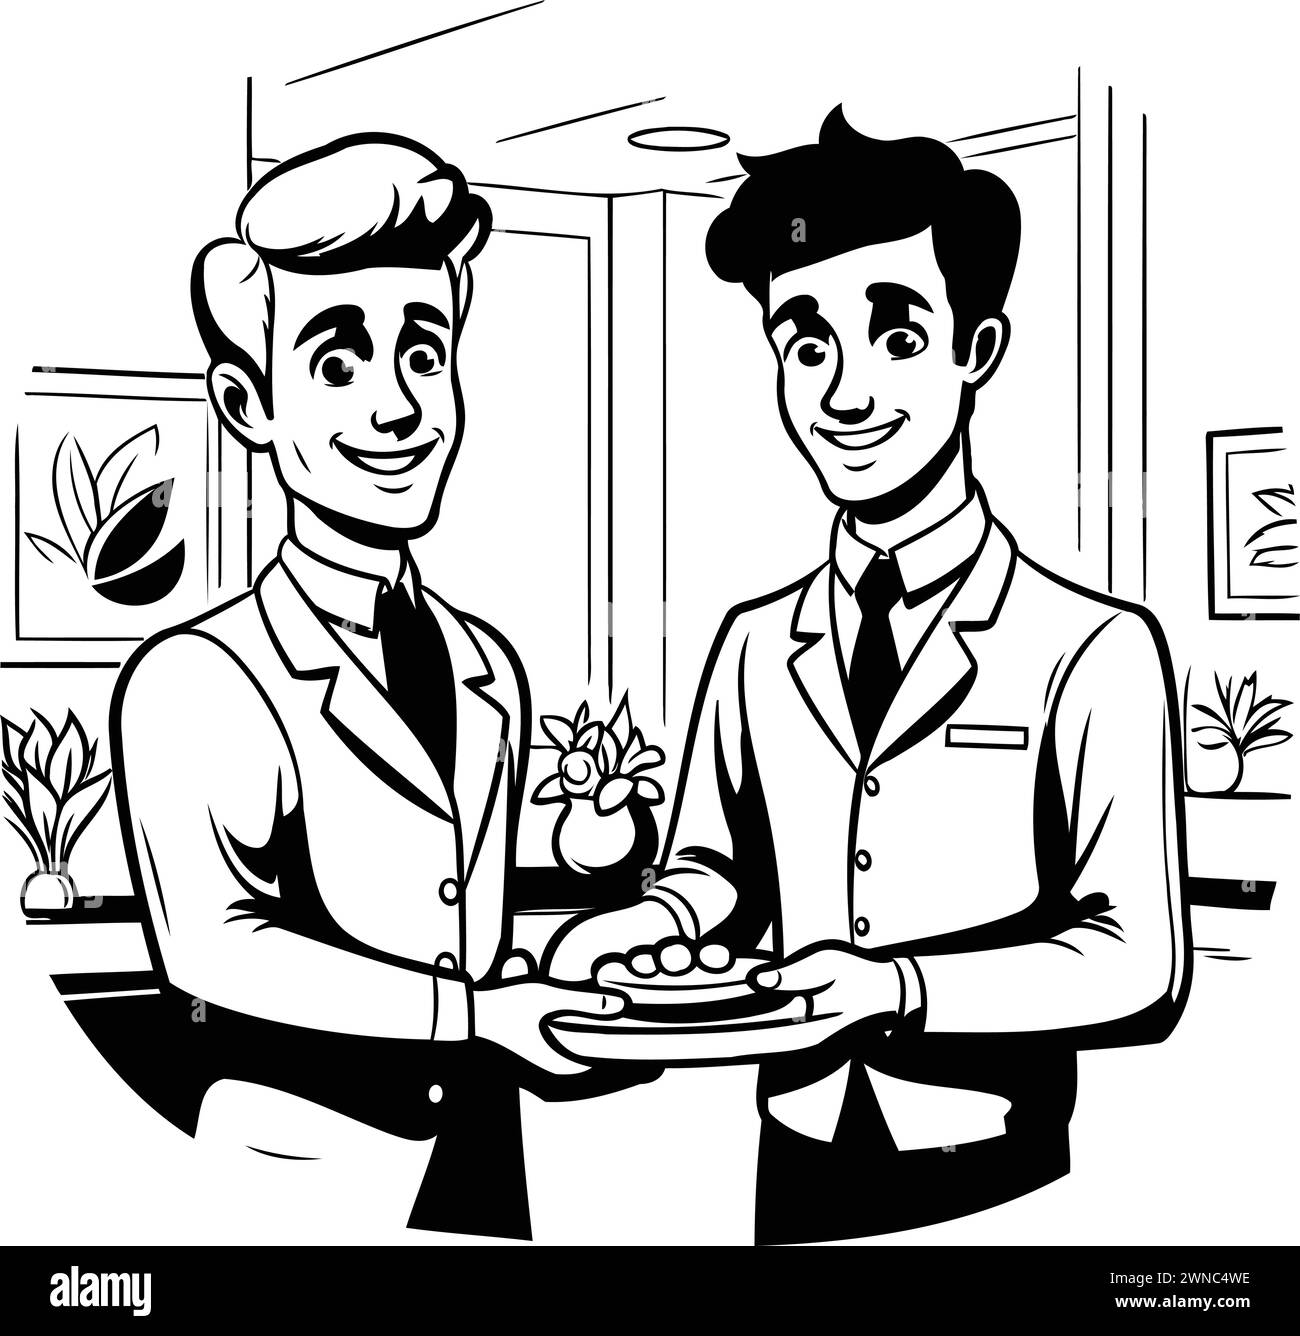 Illustration vectorielle d'un serveur servant de la nourriture à un homme dans un café Illustration de Vecteur